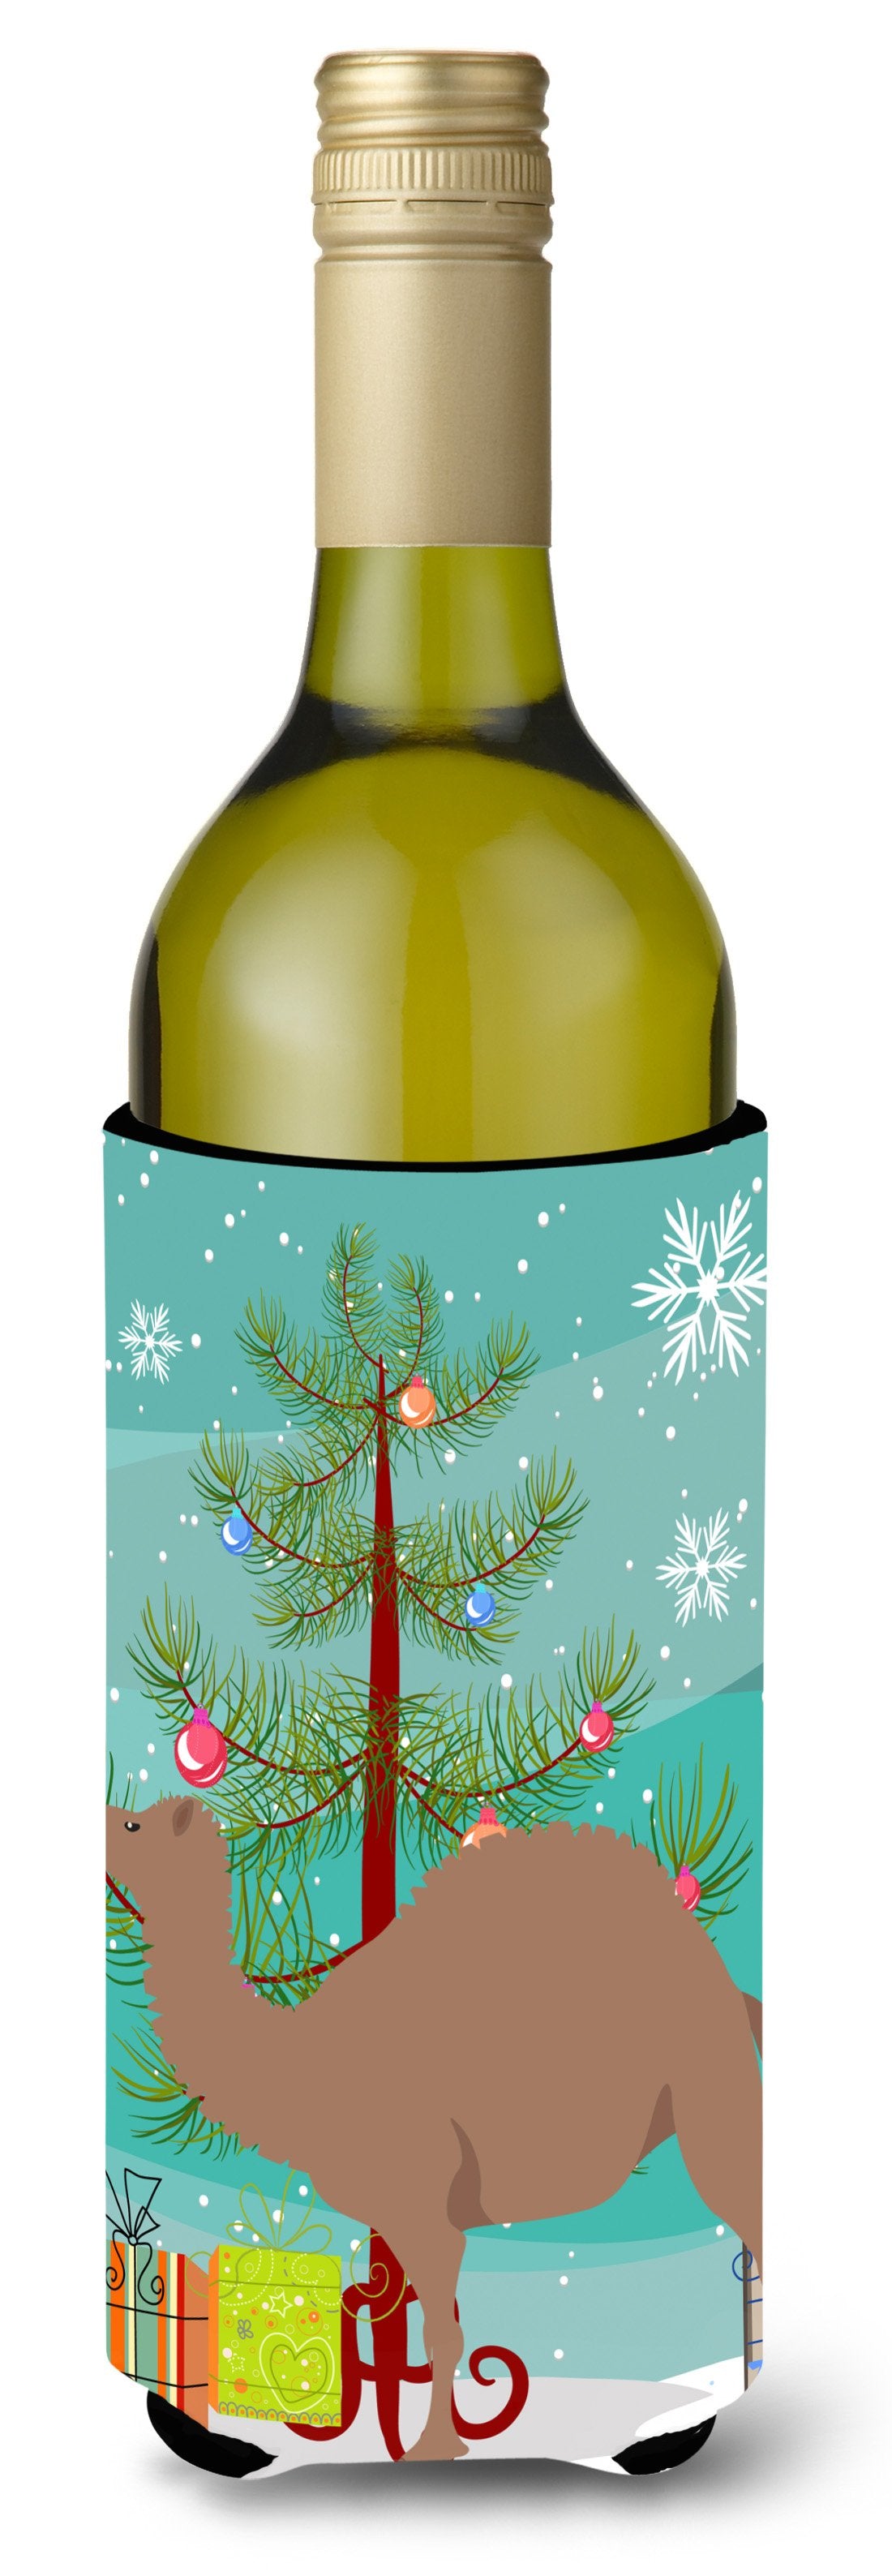 F1 Hybrid Camel Christmas Wine Bottle Beverge Insulator Hugger BB9186LITERK by Caroline's Treasures